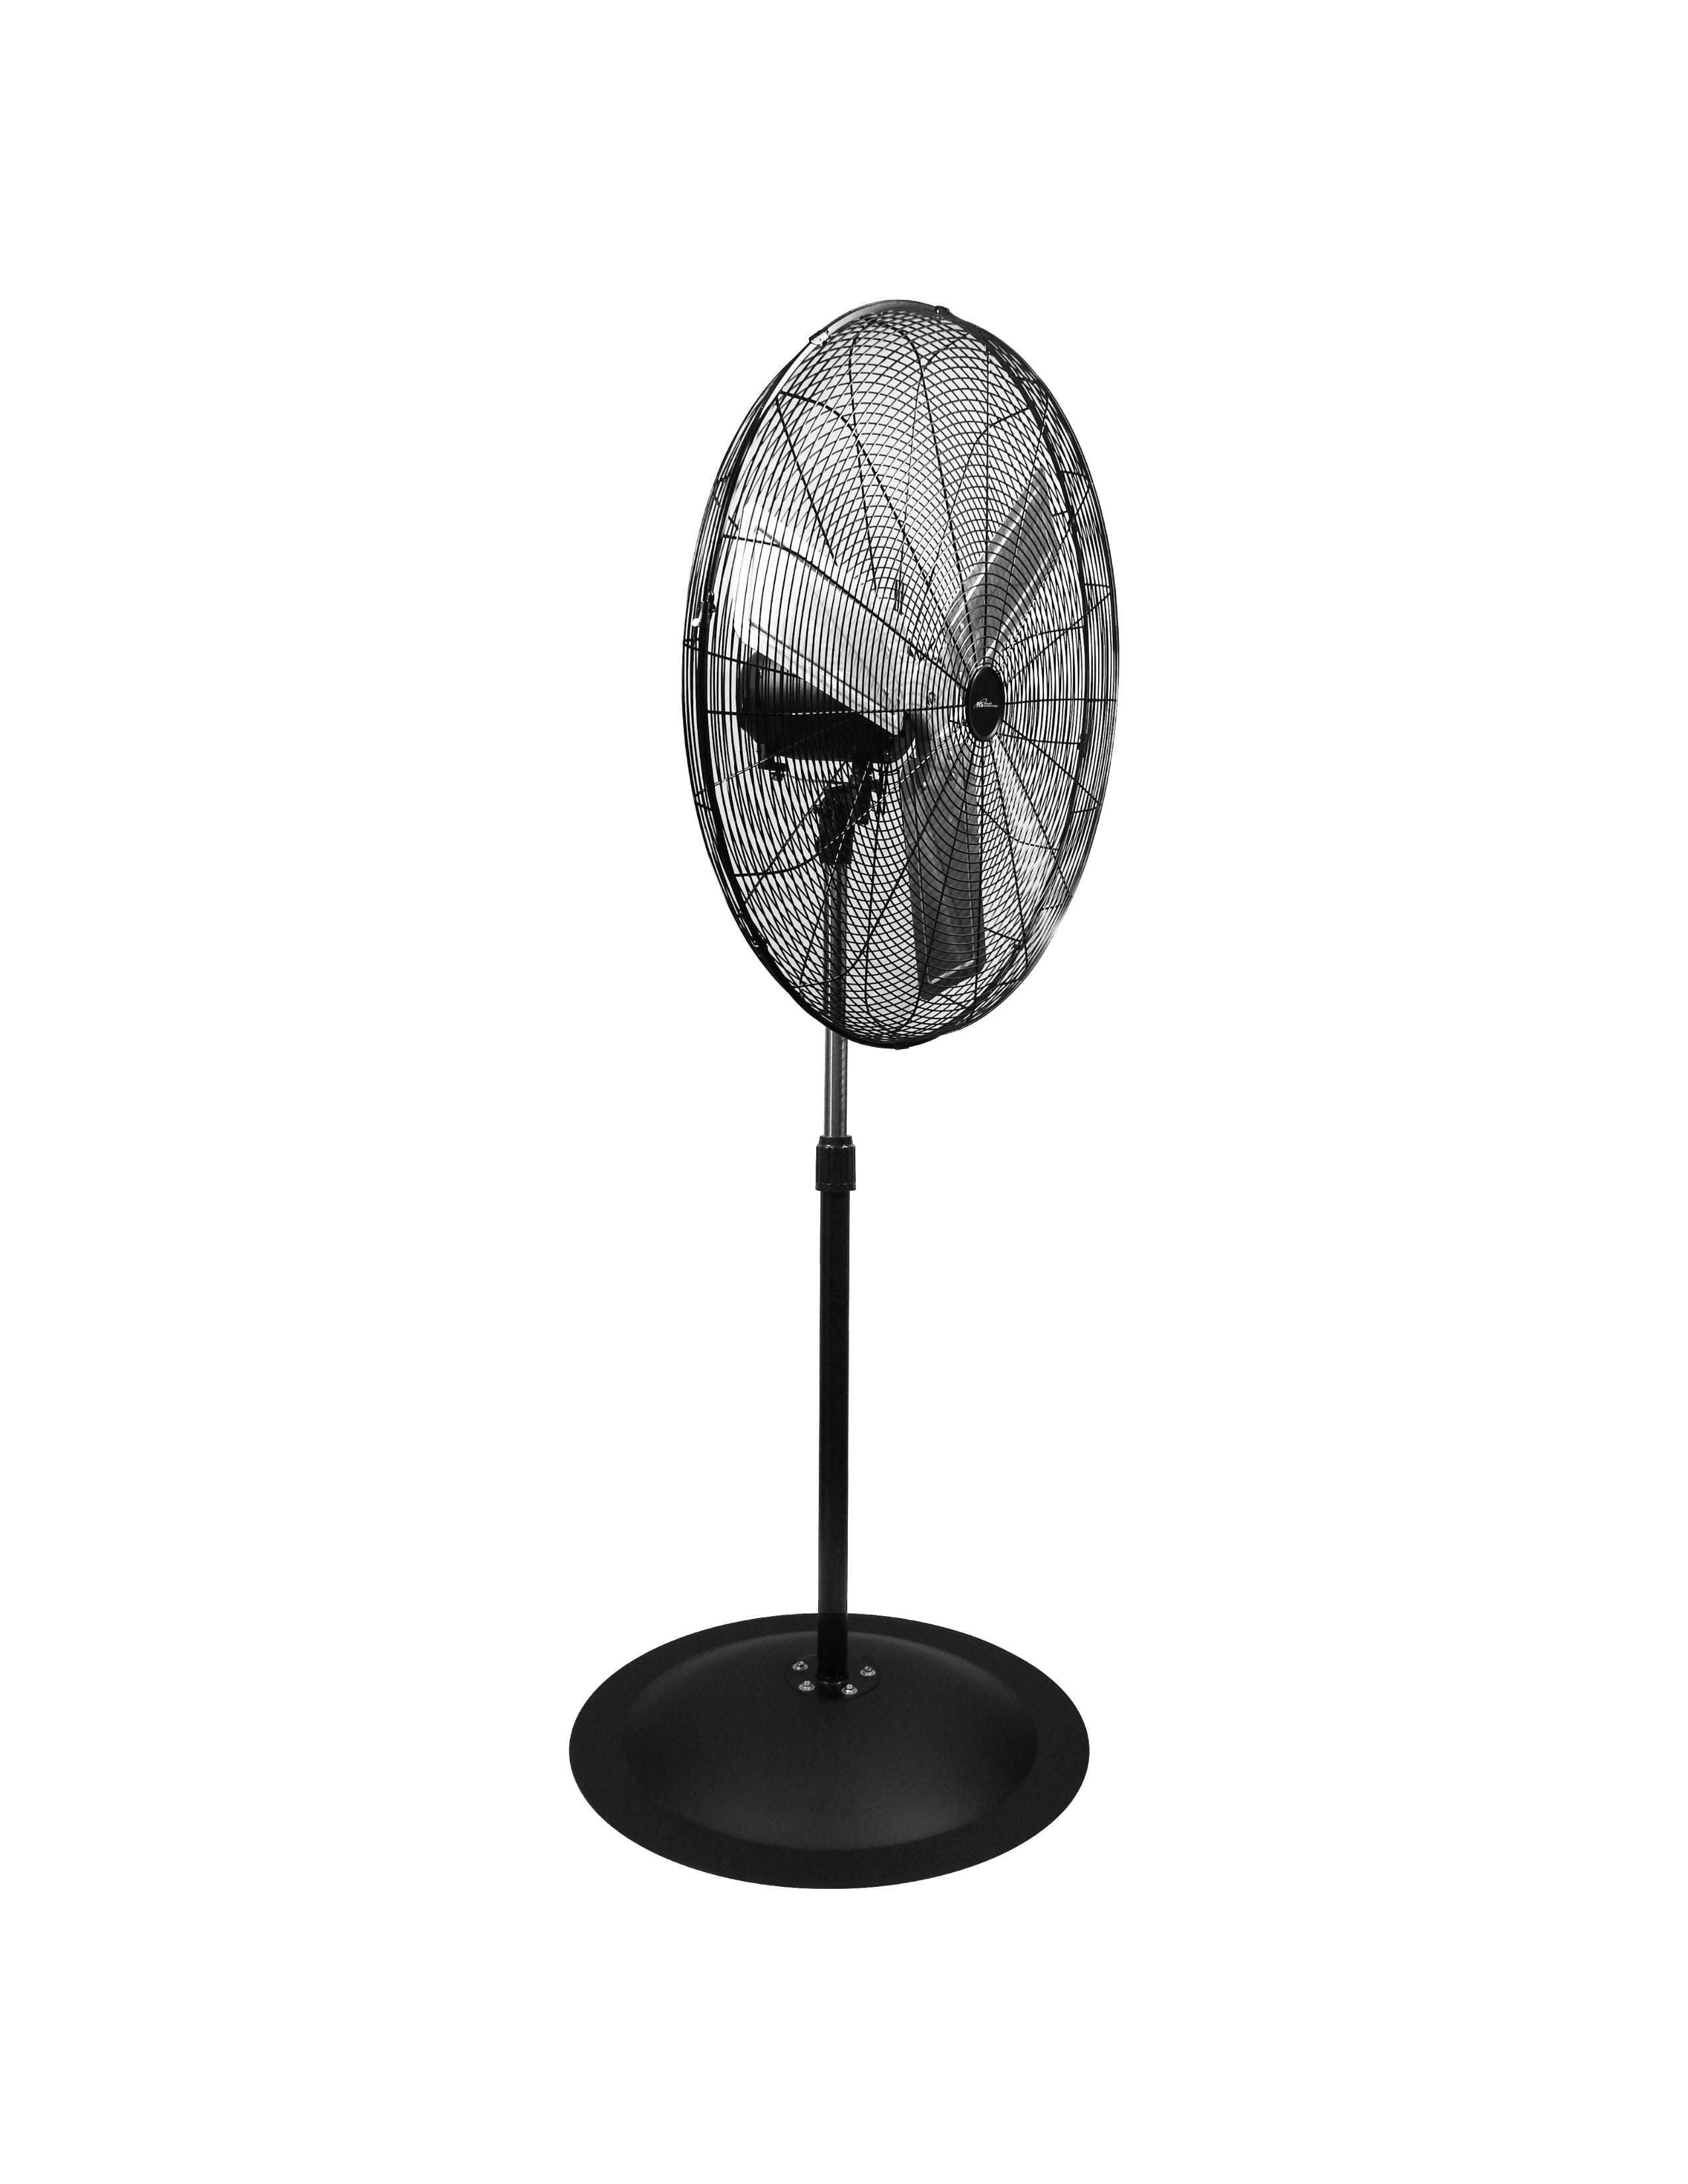 PFNC-30/ 30” High Velocity Oscillating Pedestal Fan, 8400 CFM